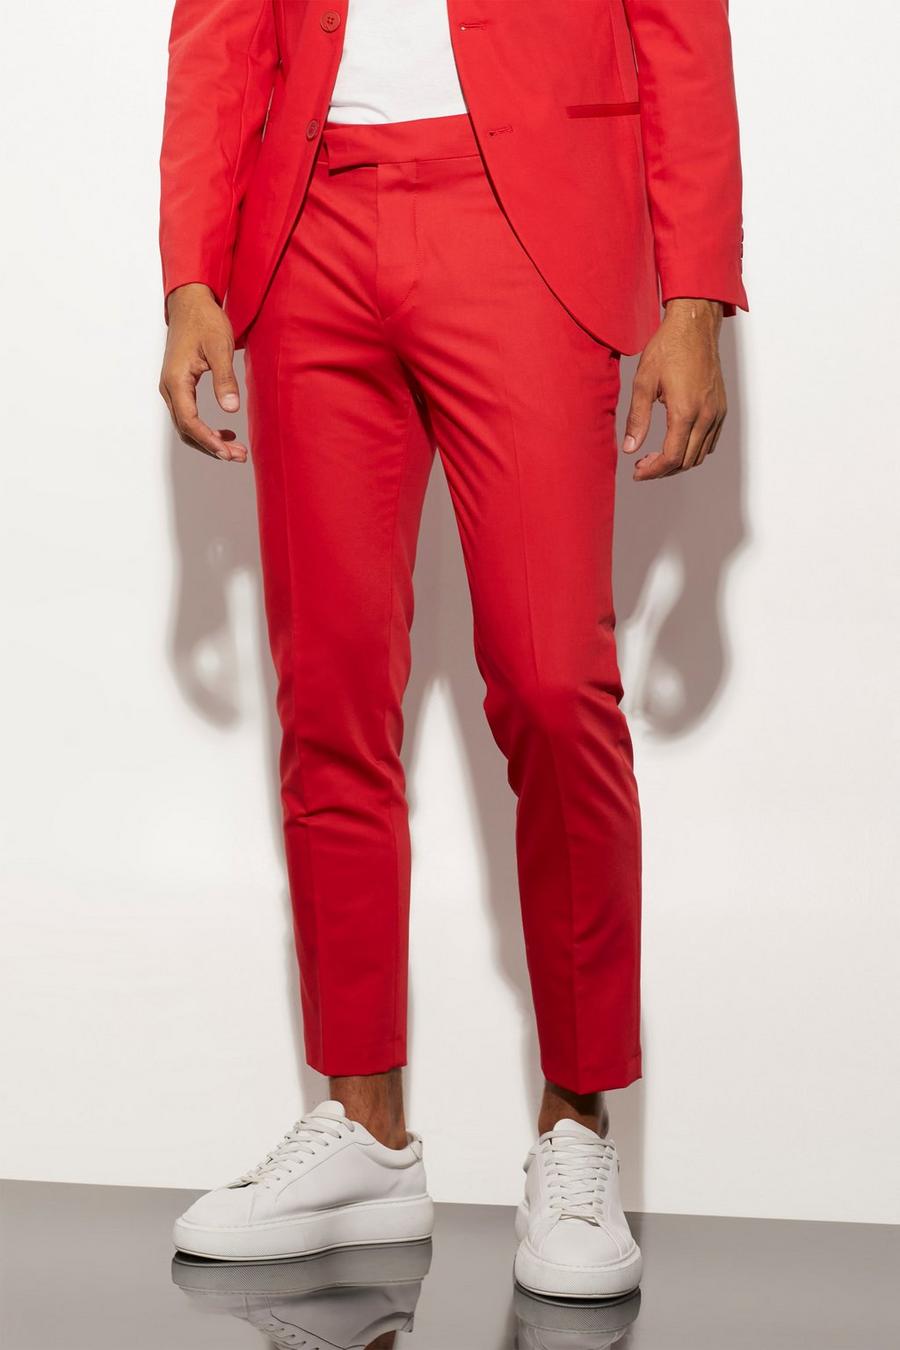 אדום red מכנסי חליפה קרופ 